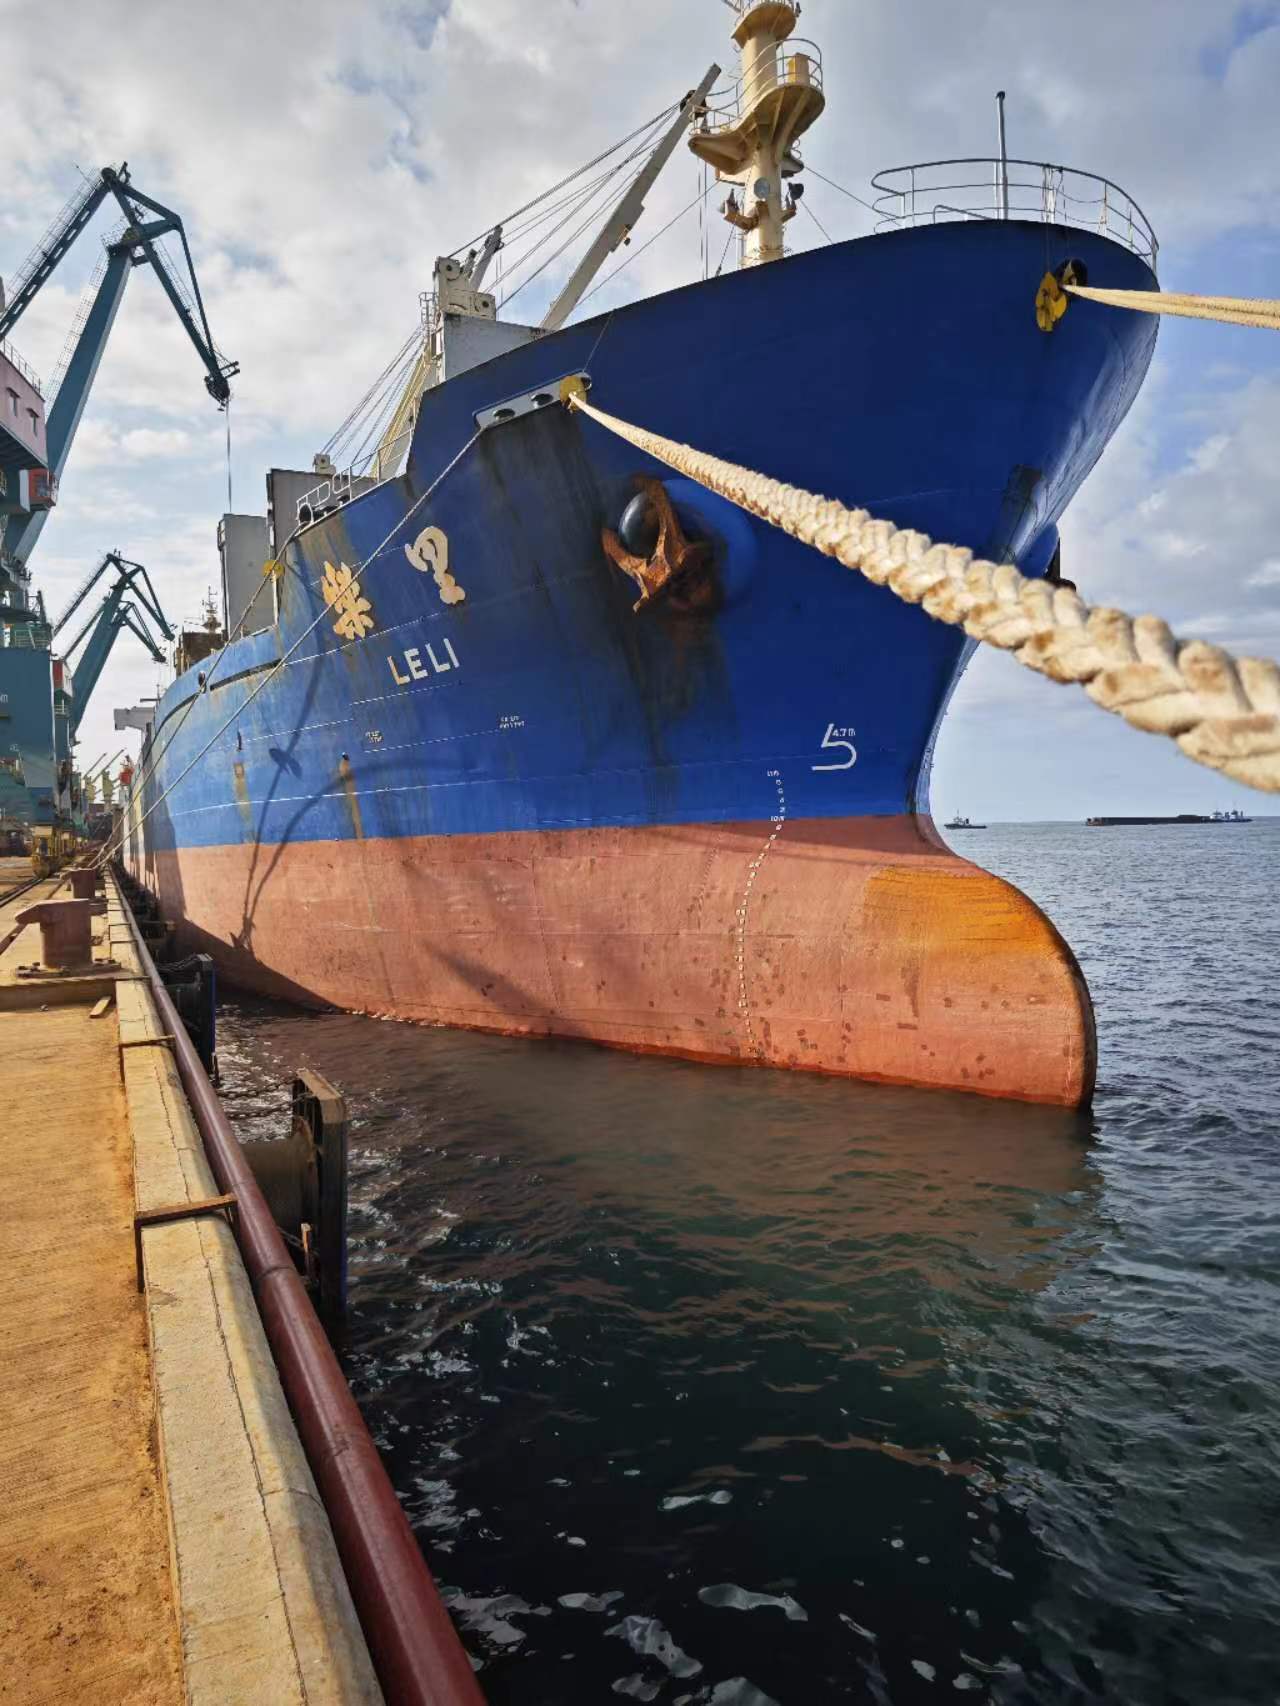 运输公司部分资产“乐里”杂货船出售招标